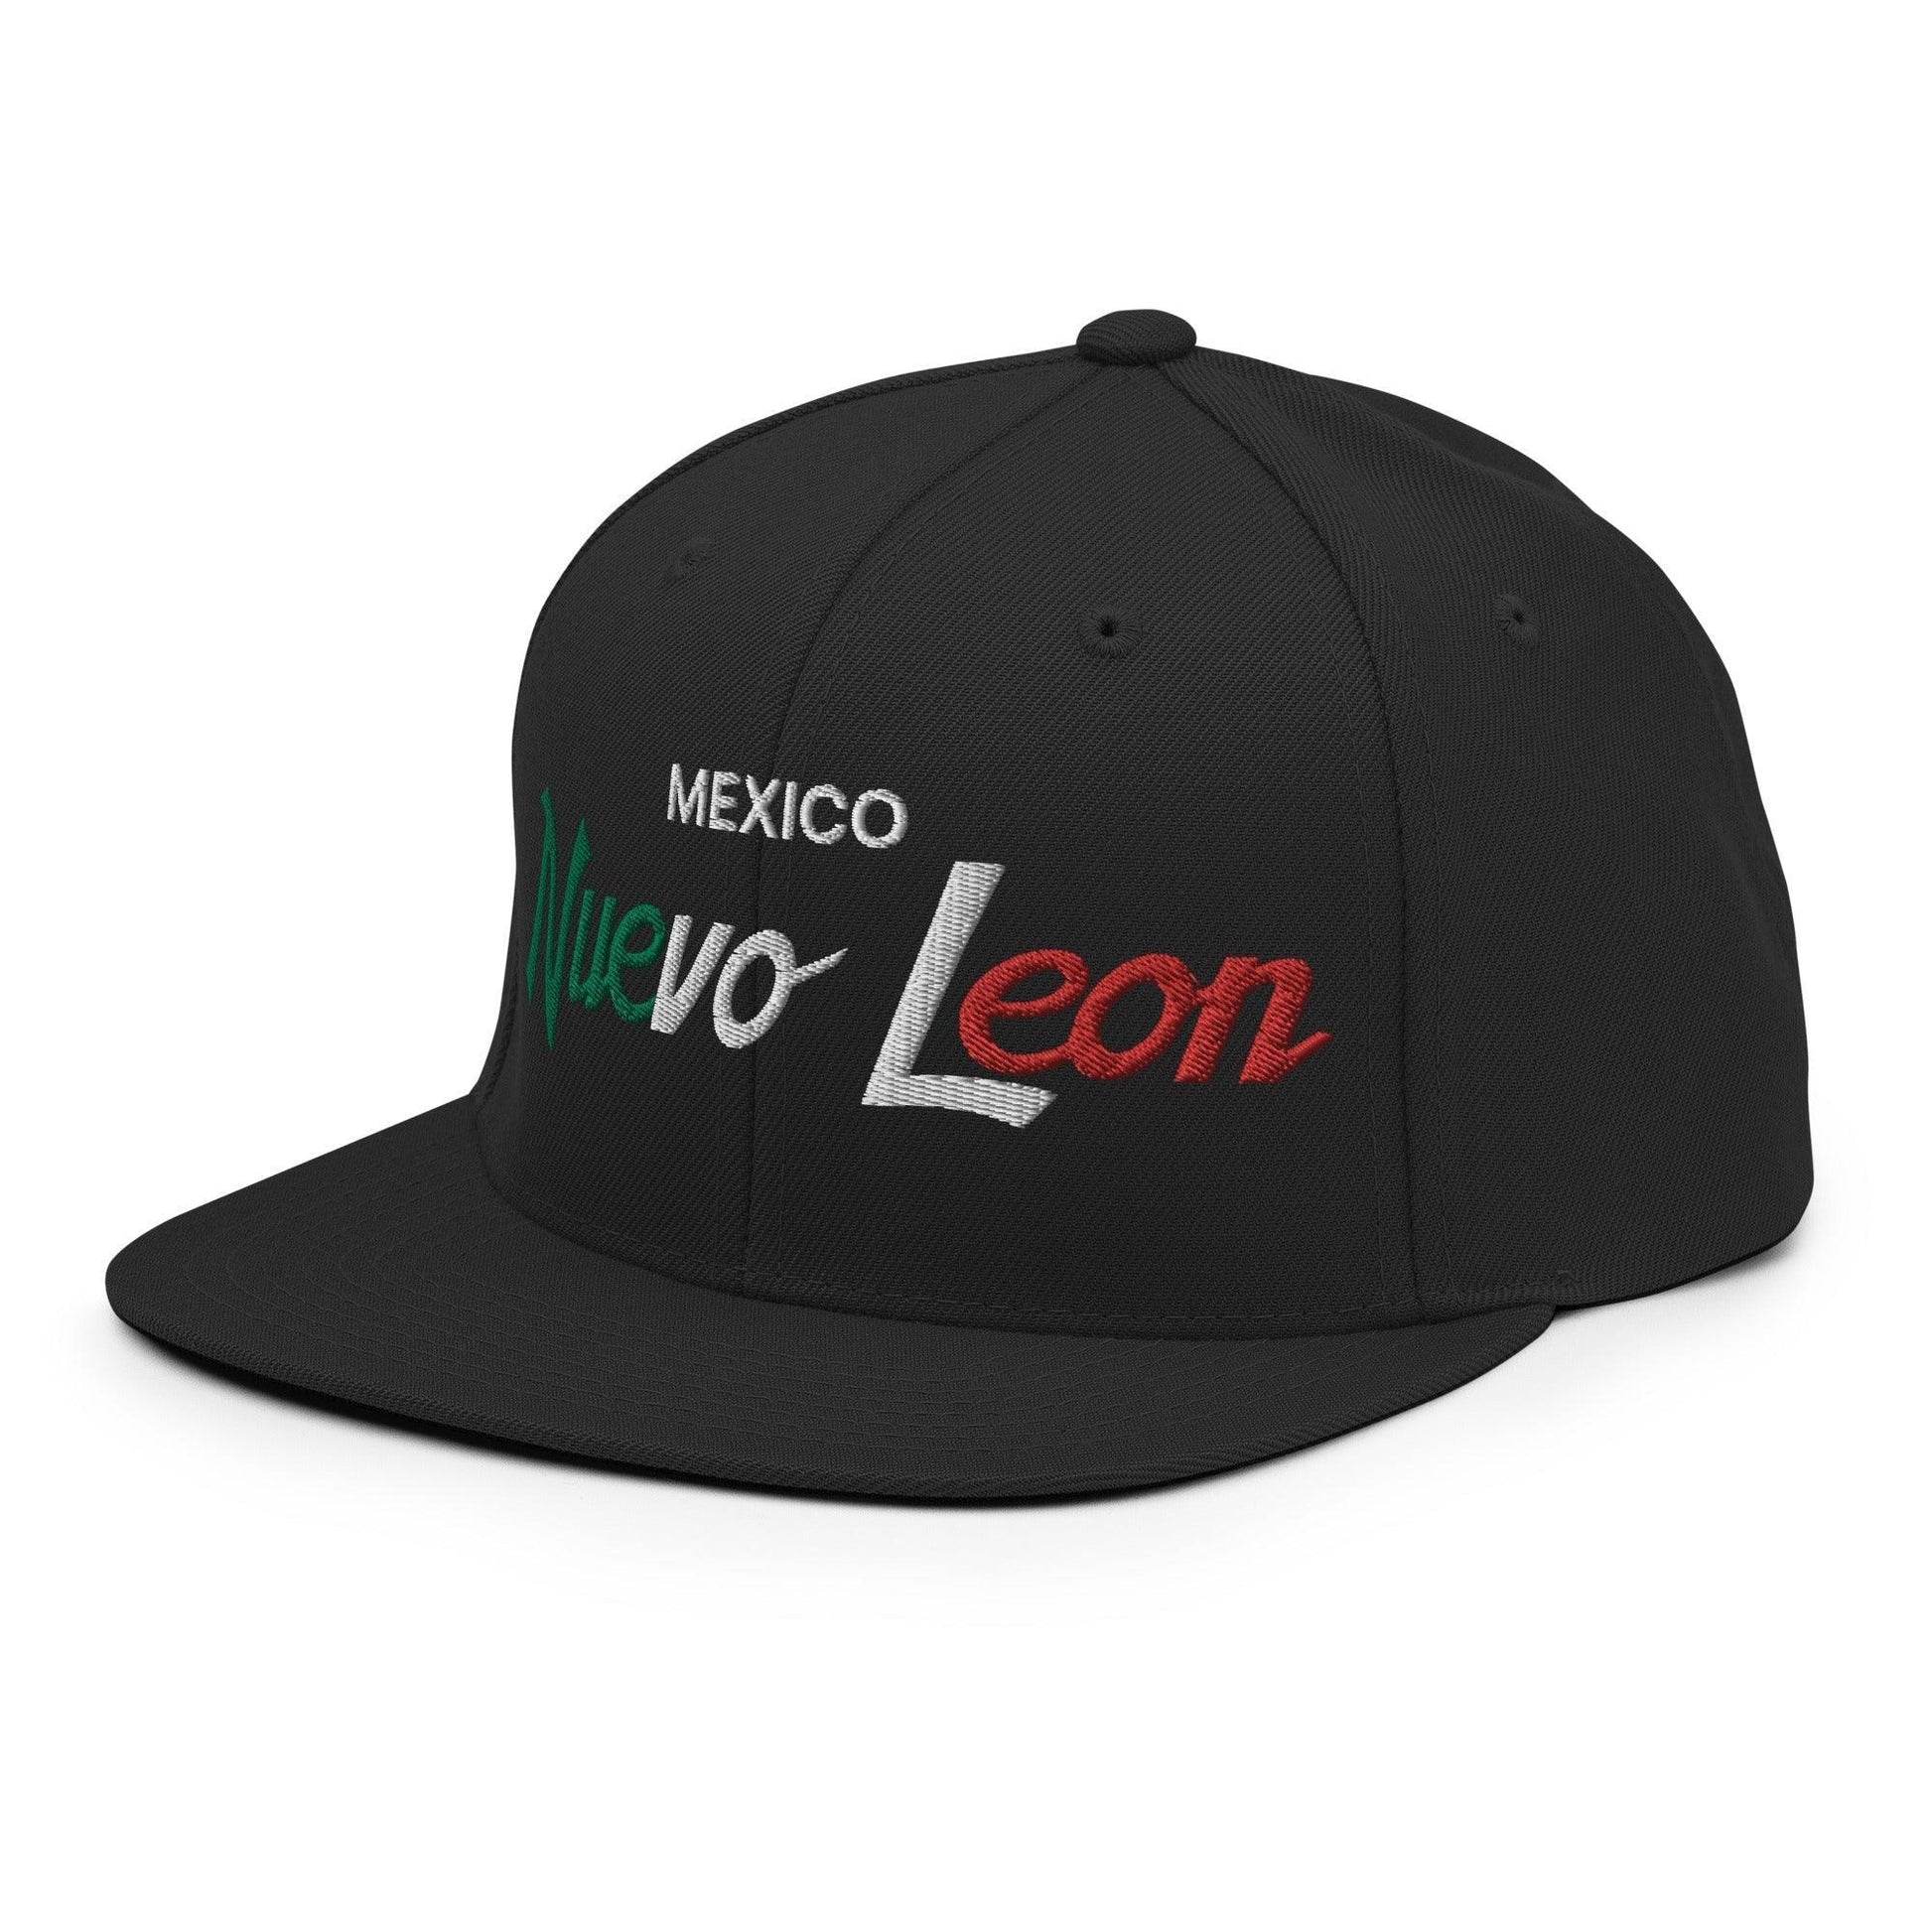 Nuevo Leon Mexico Vintage Sports Script Snapback Hat Black